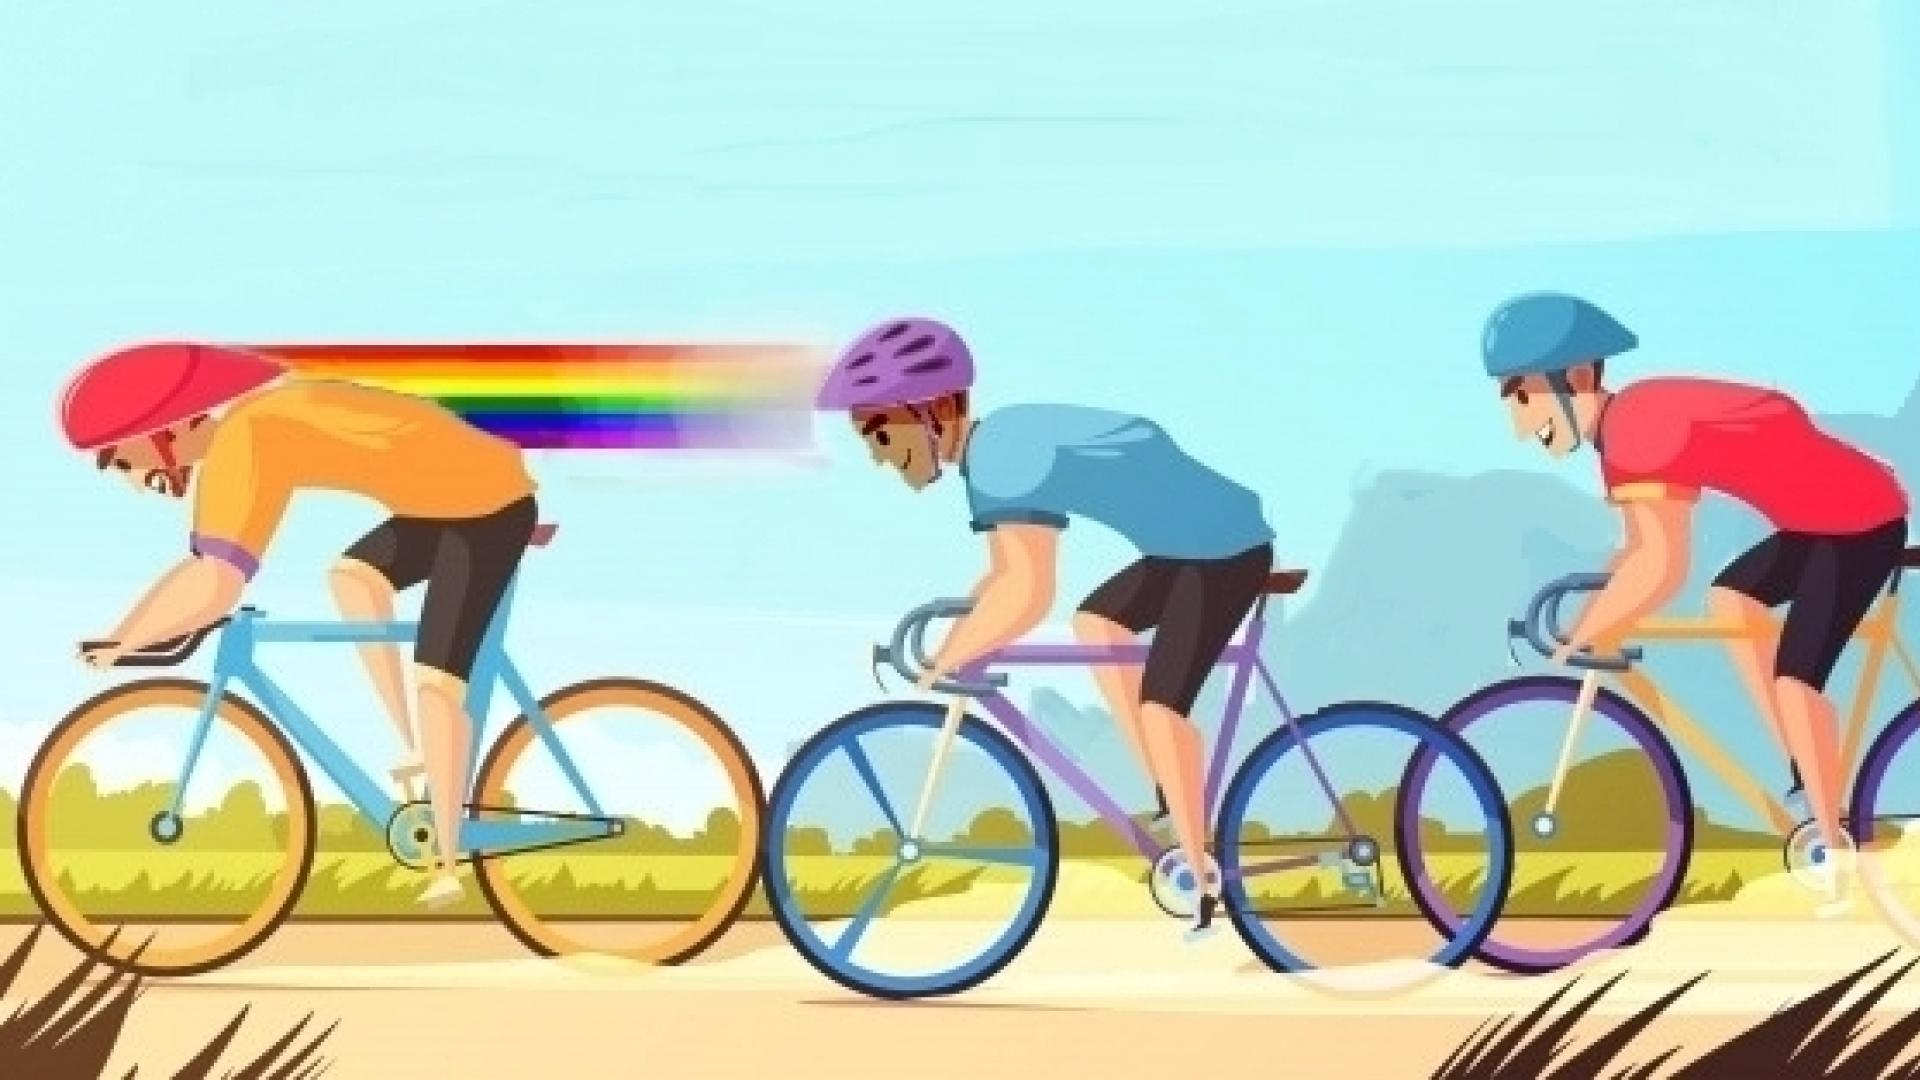 Plaatje van drie wielrenners, waarvan de vaart van de voorste in regenboogkleuren is afgebeeld